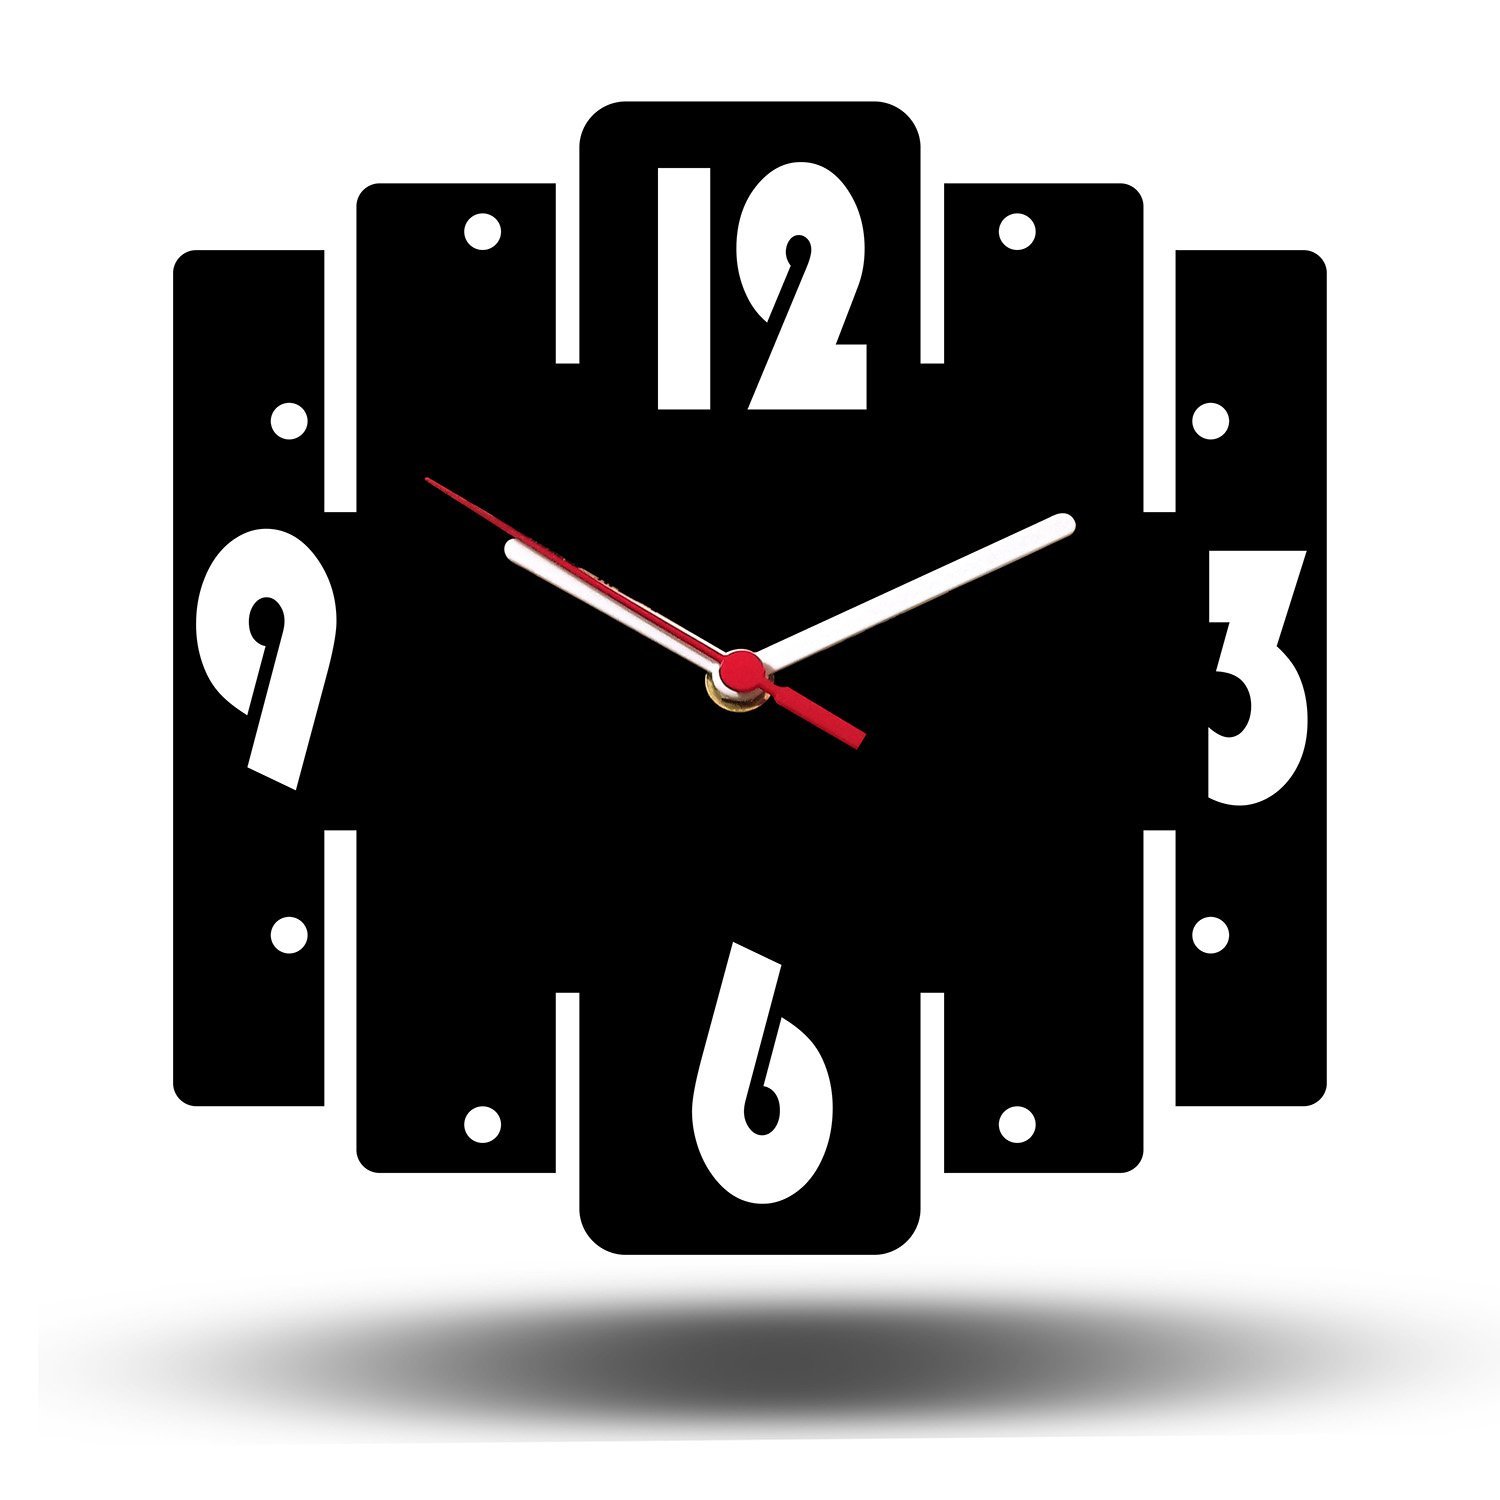 Relógio De Parede Retro Mdf Preto 25x25cm Quartz Tic Tac